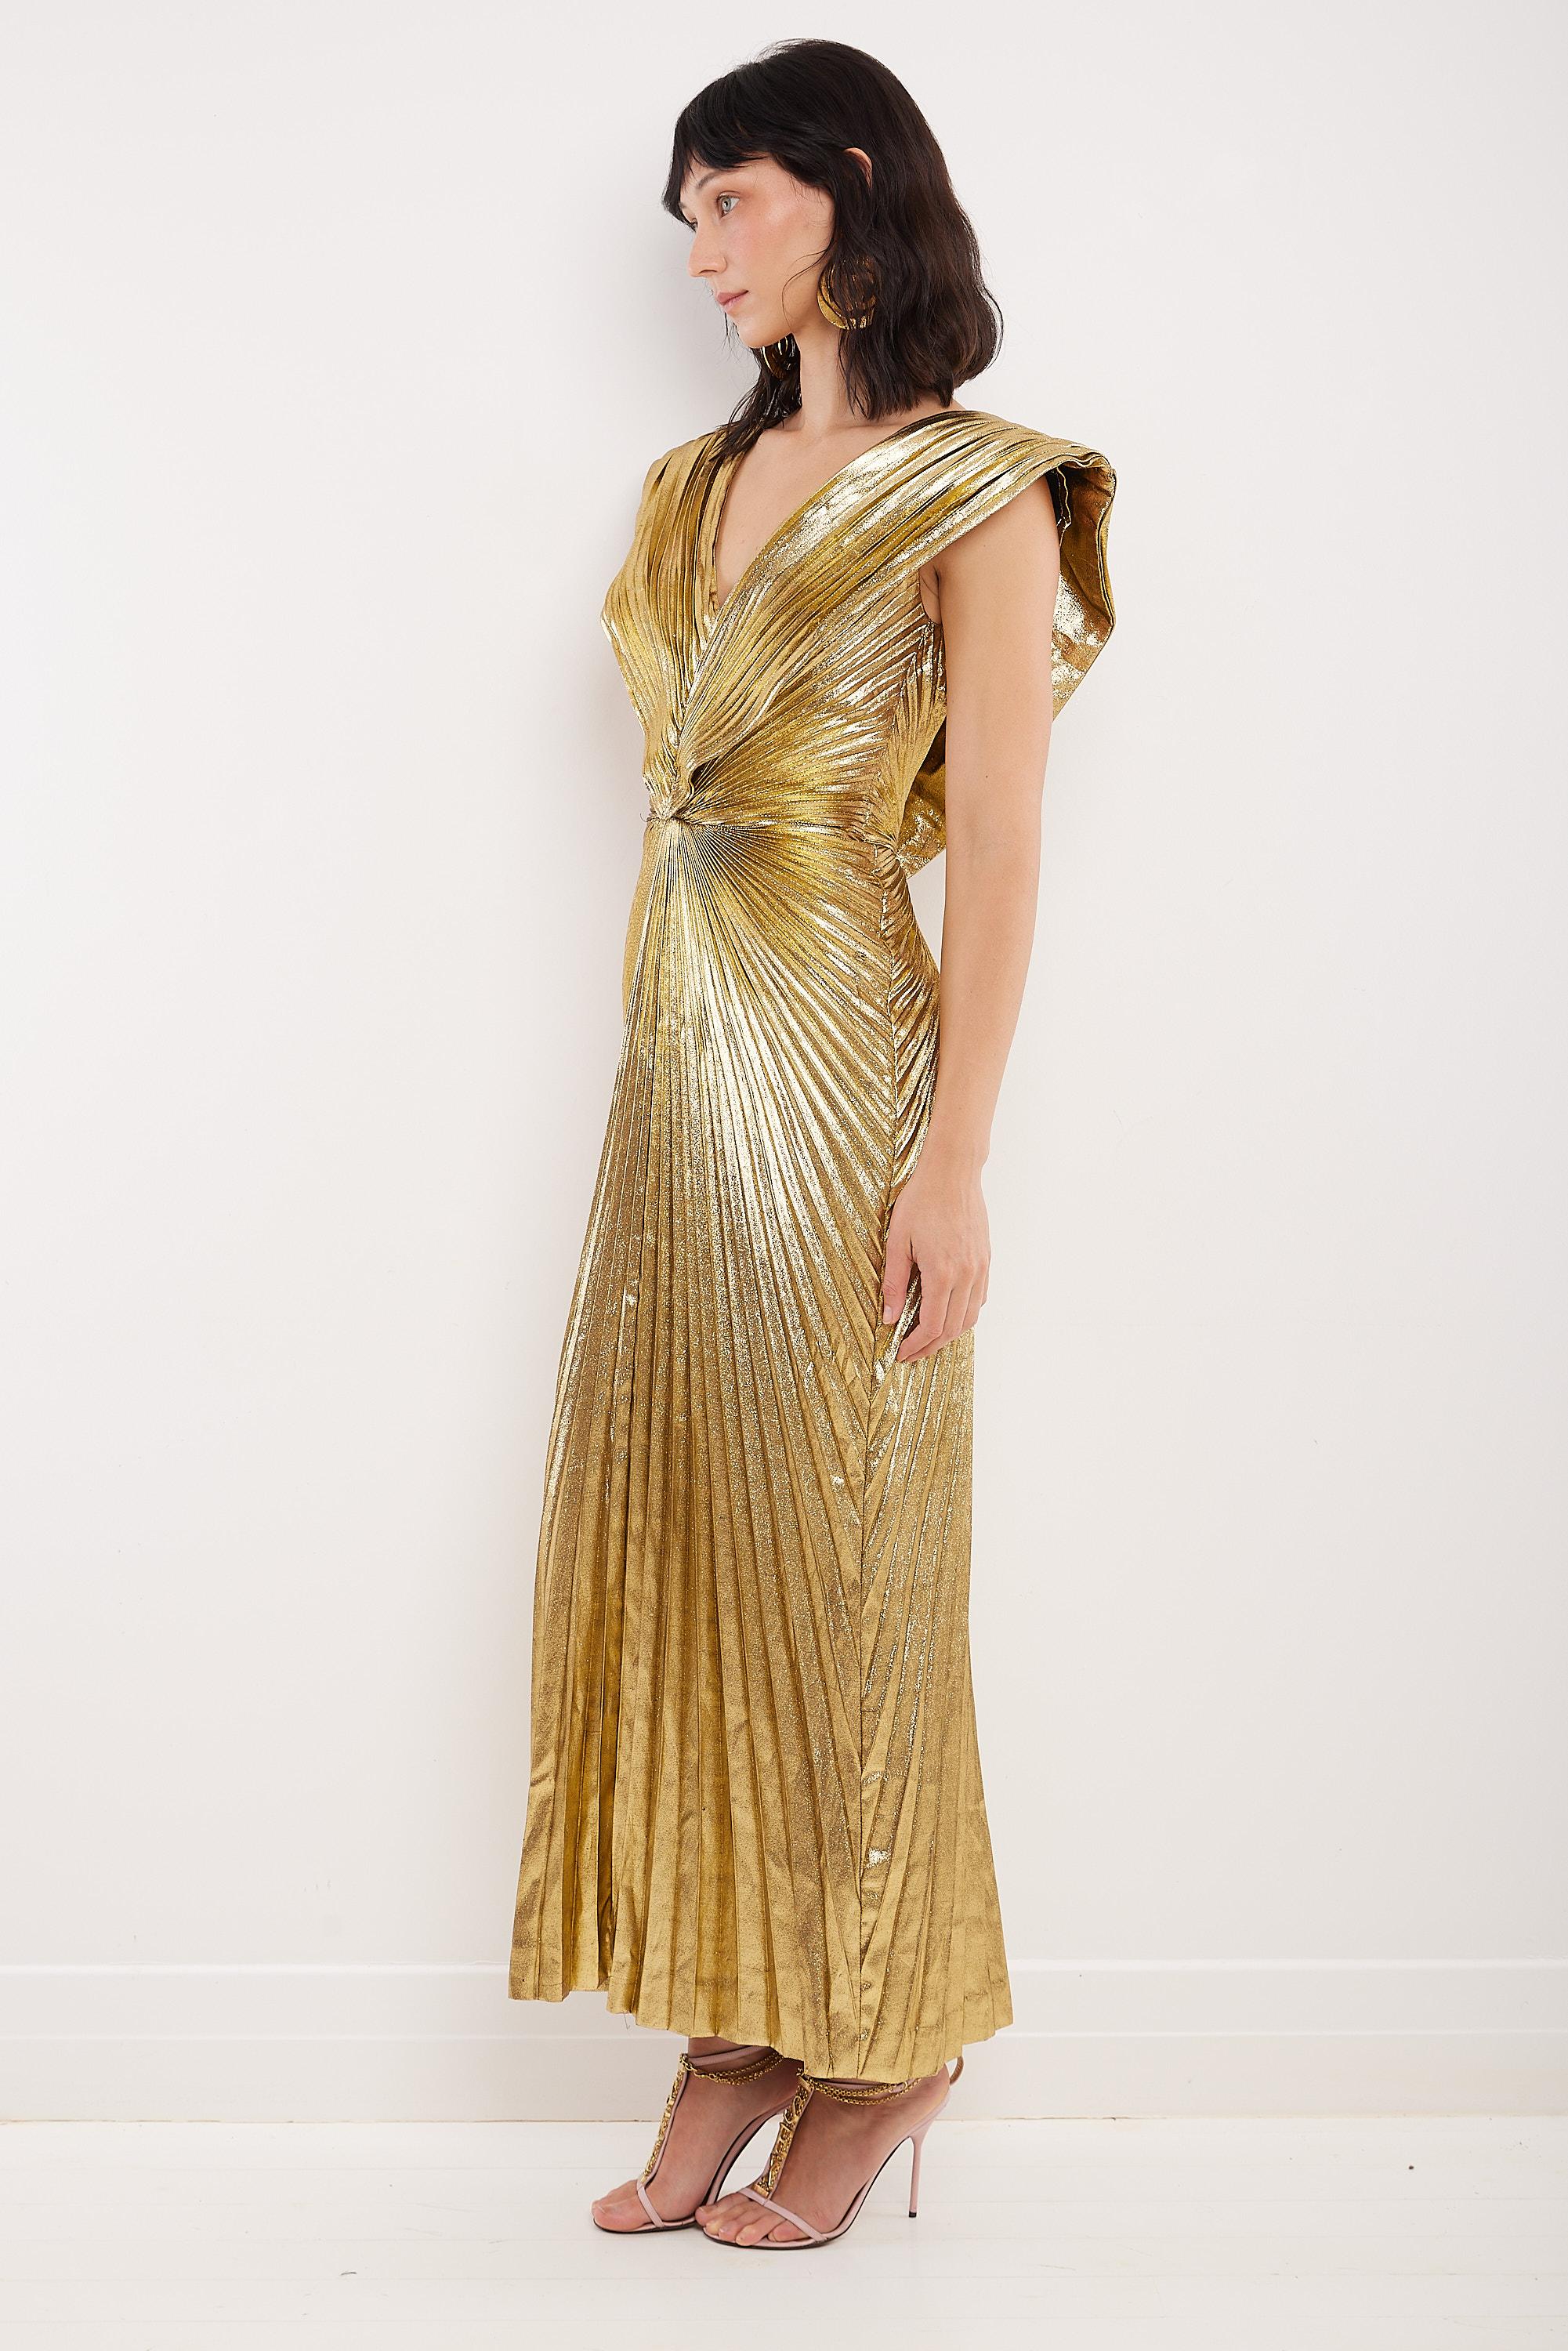 Dieses Kleid von Loris Azzaro aus dem Jahr 1988 ist ein wahres Museumsstück. Supermodel Amber Valletta trug es bei der Met Gala 2022, die unter dem Motto 